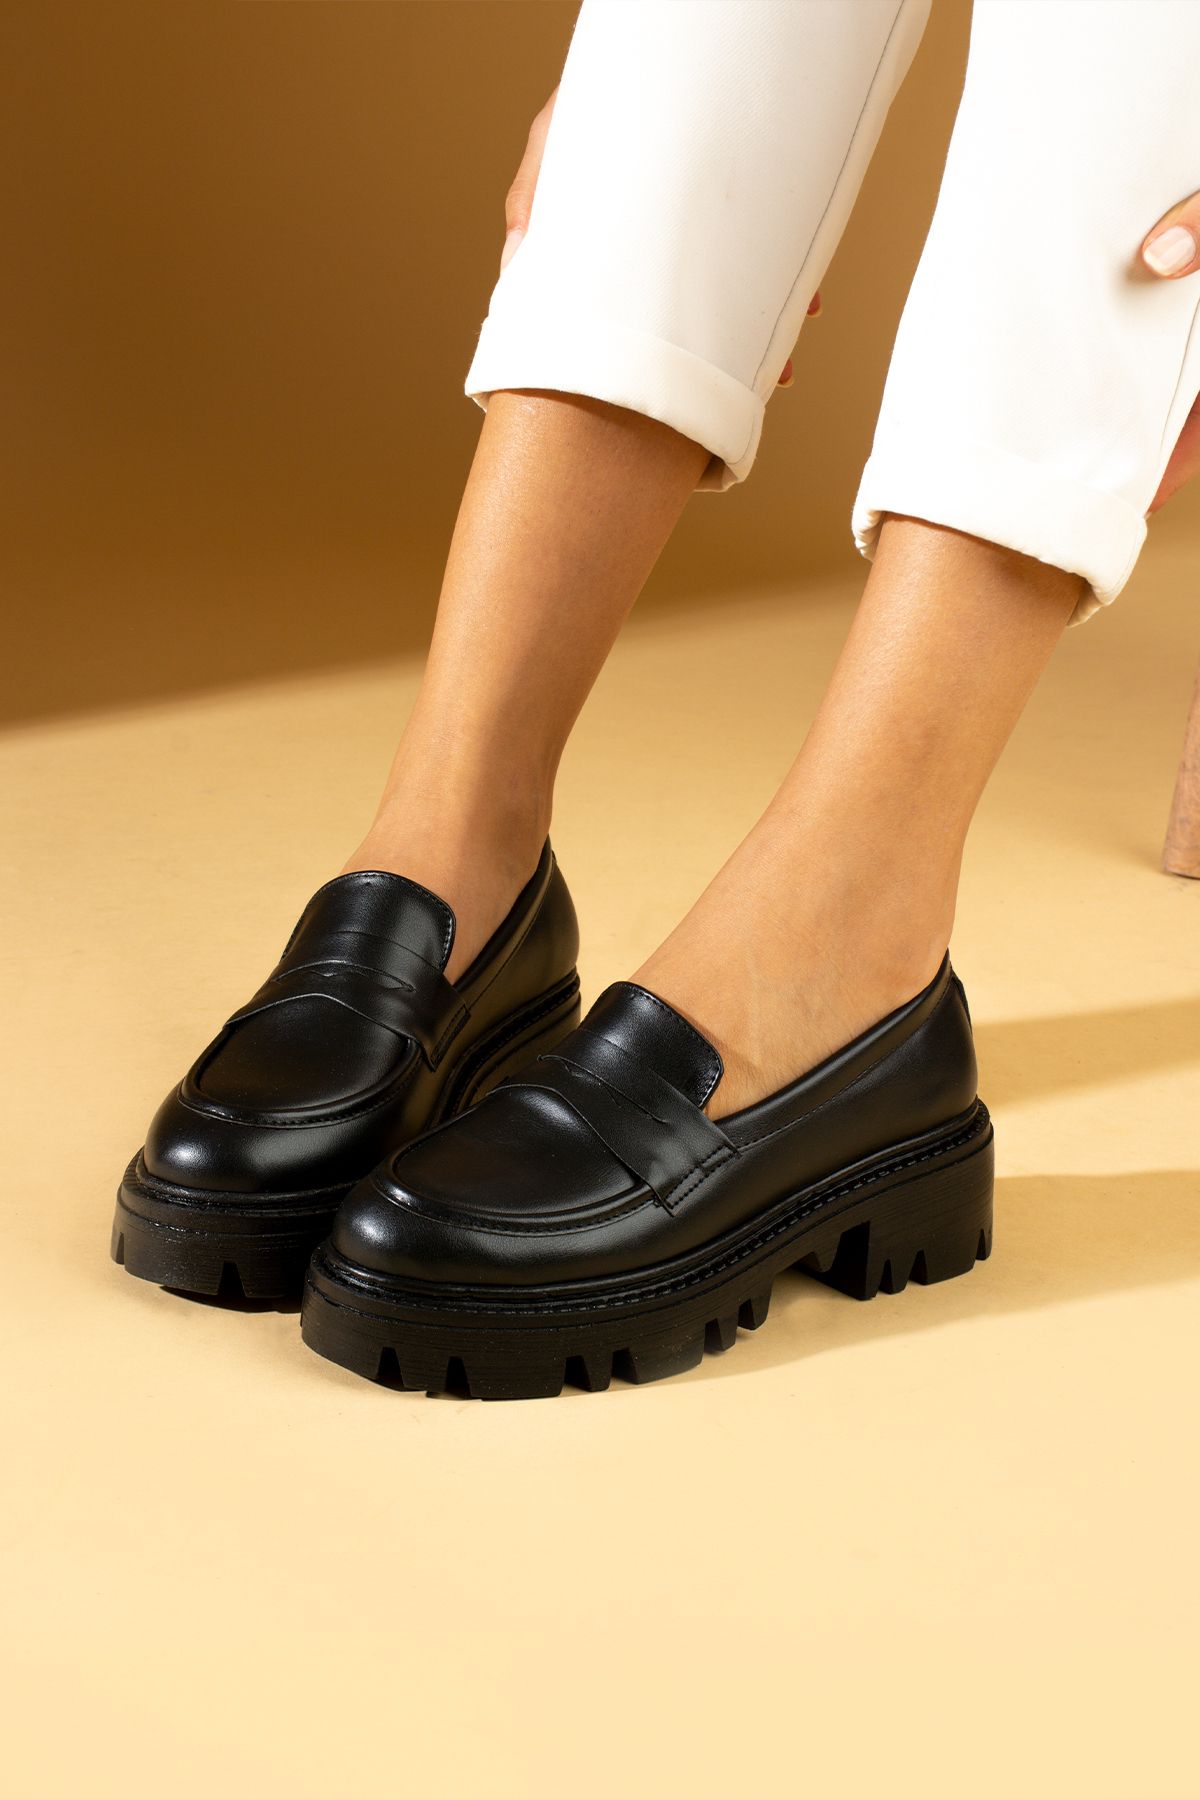 Pembe Potin Kadın Siyah Loafer Makosen Casual Tokalı Günlük Rahat Taban Ayakkabı